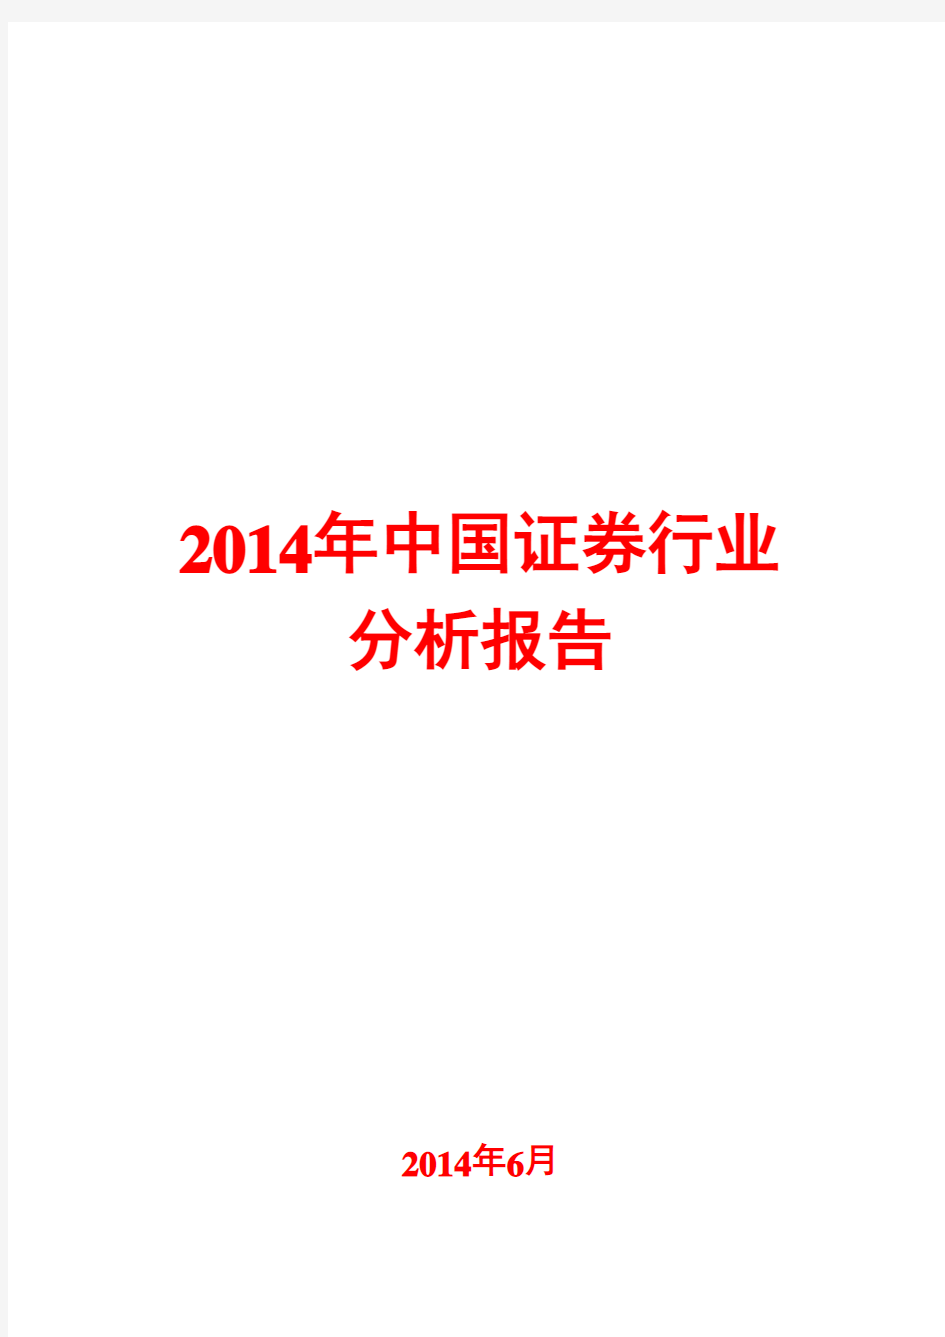 2014年中国证券行业分析报告